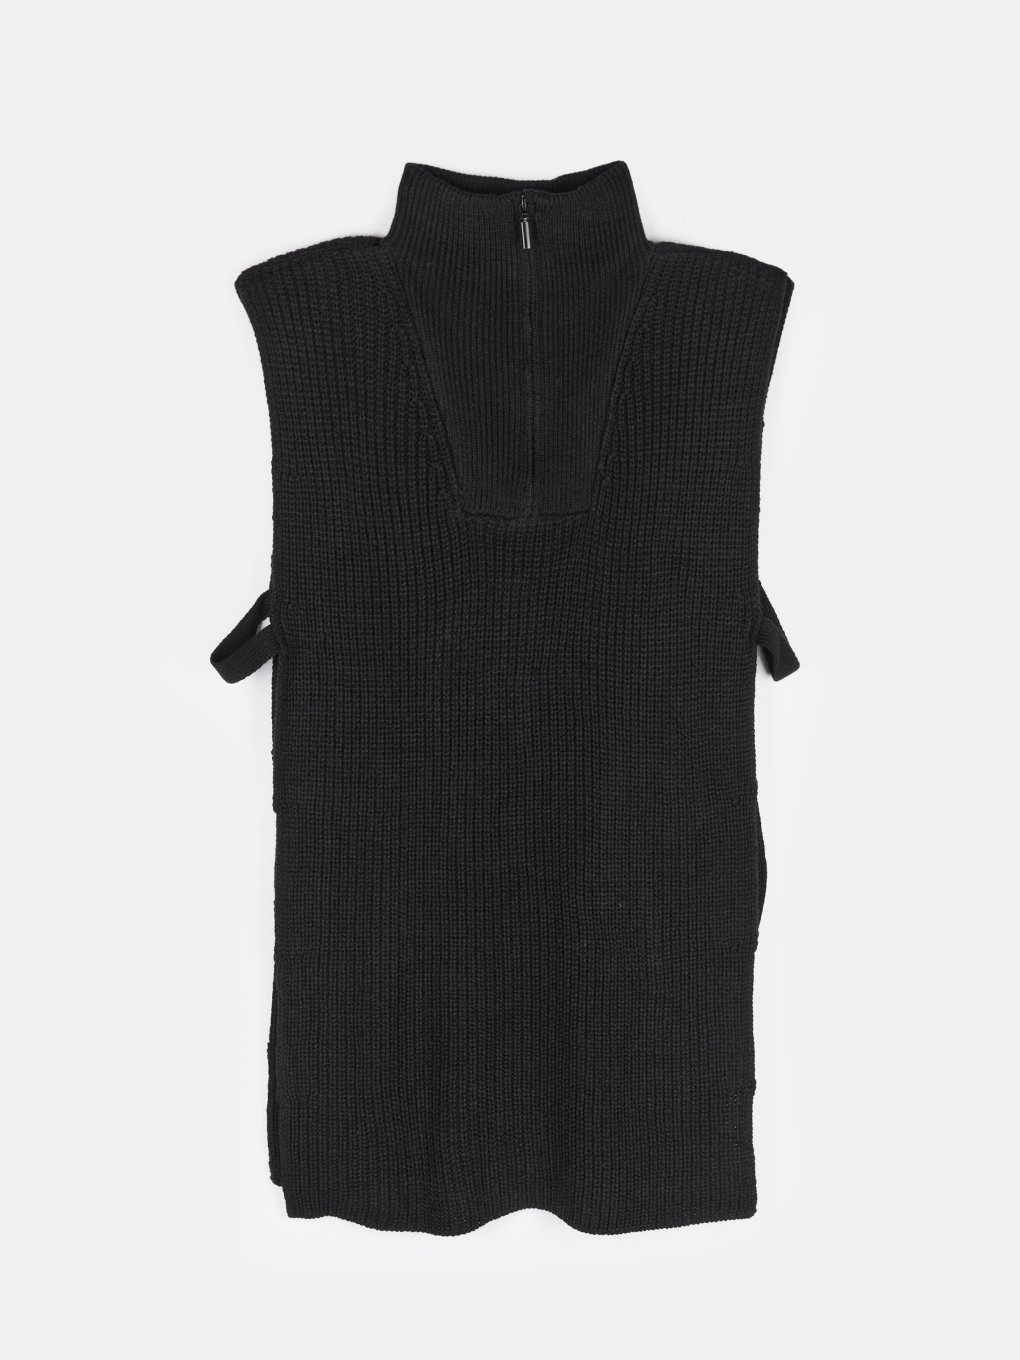 Zip- up vest with lacing